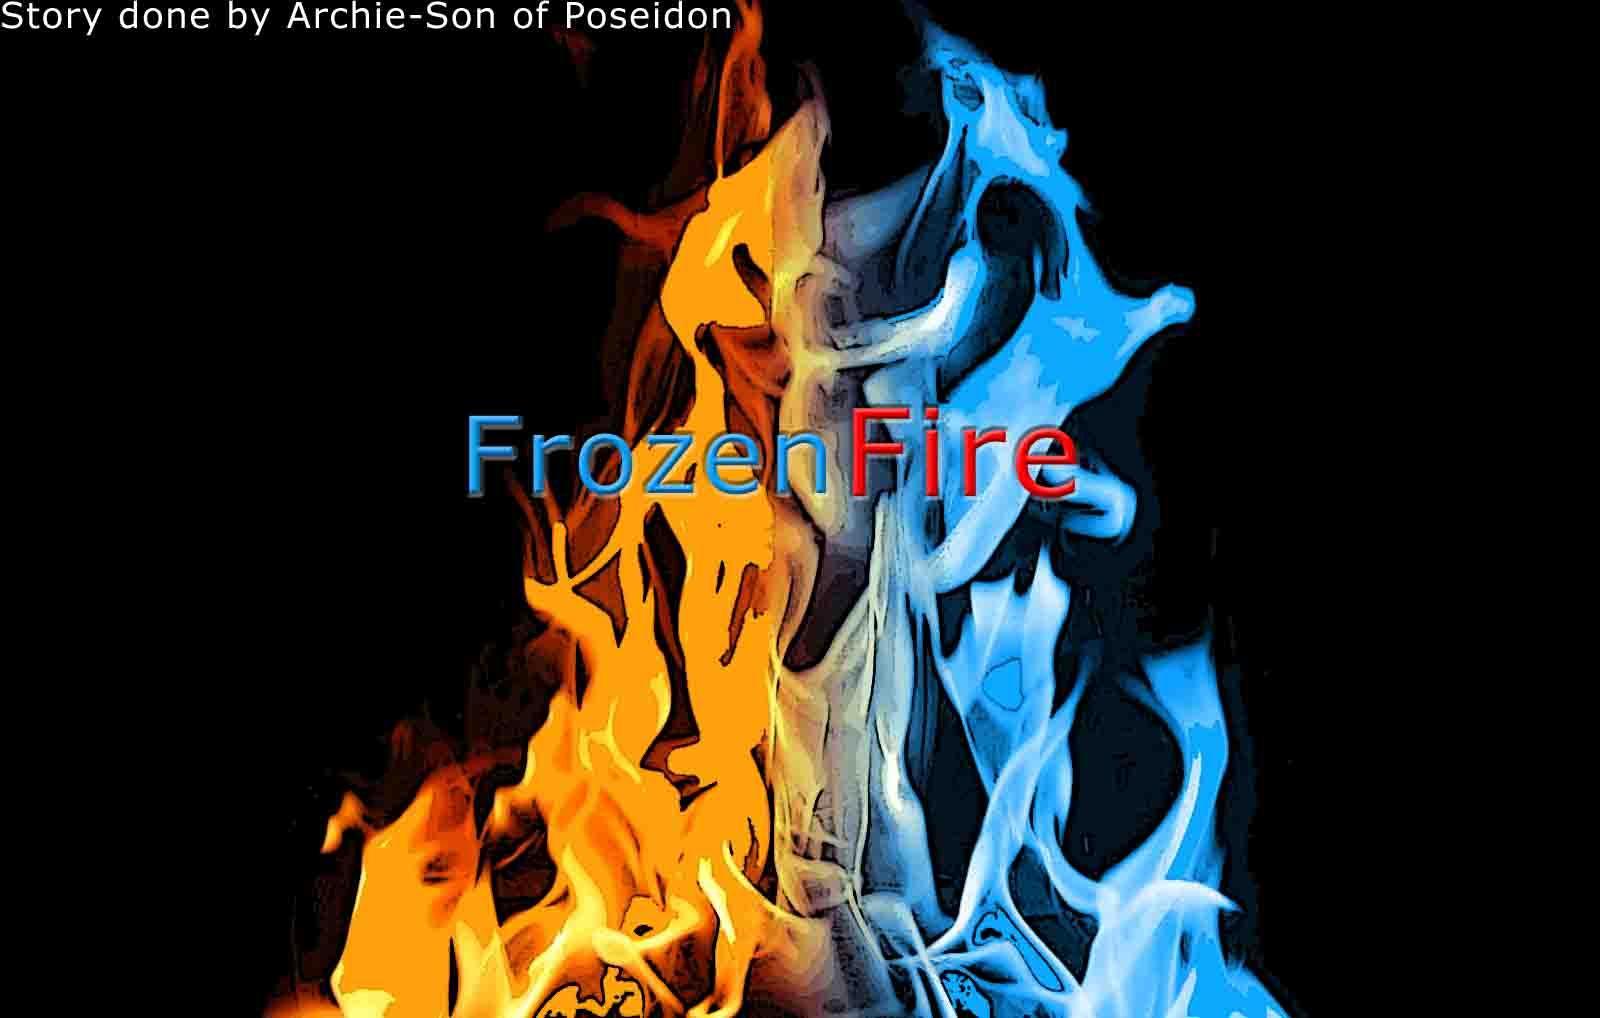 Freezing fire